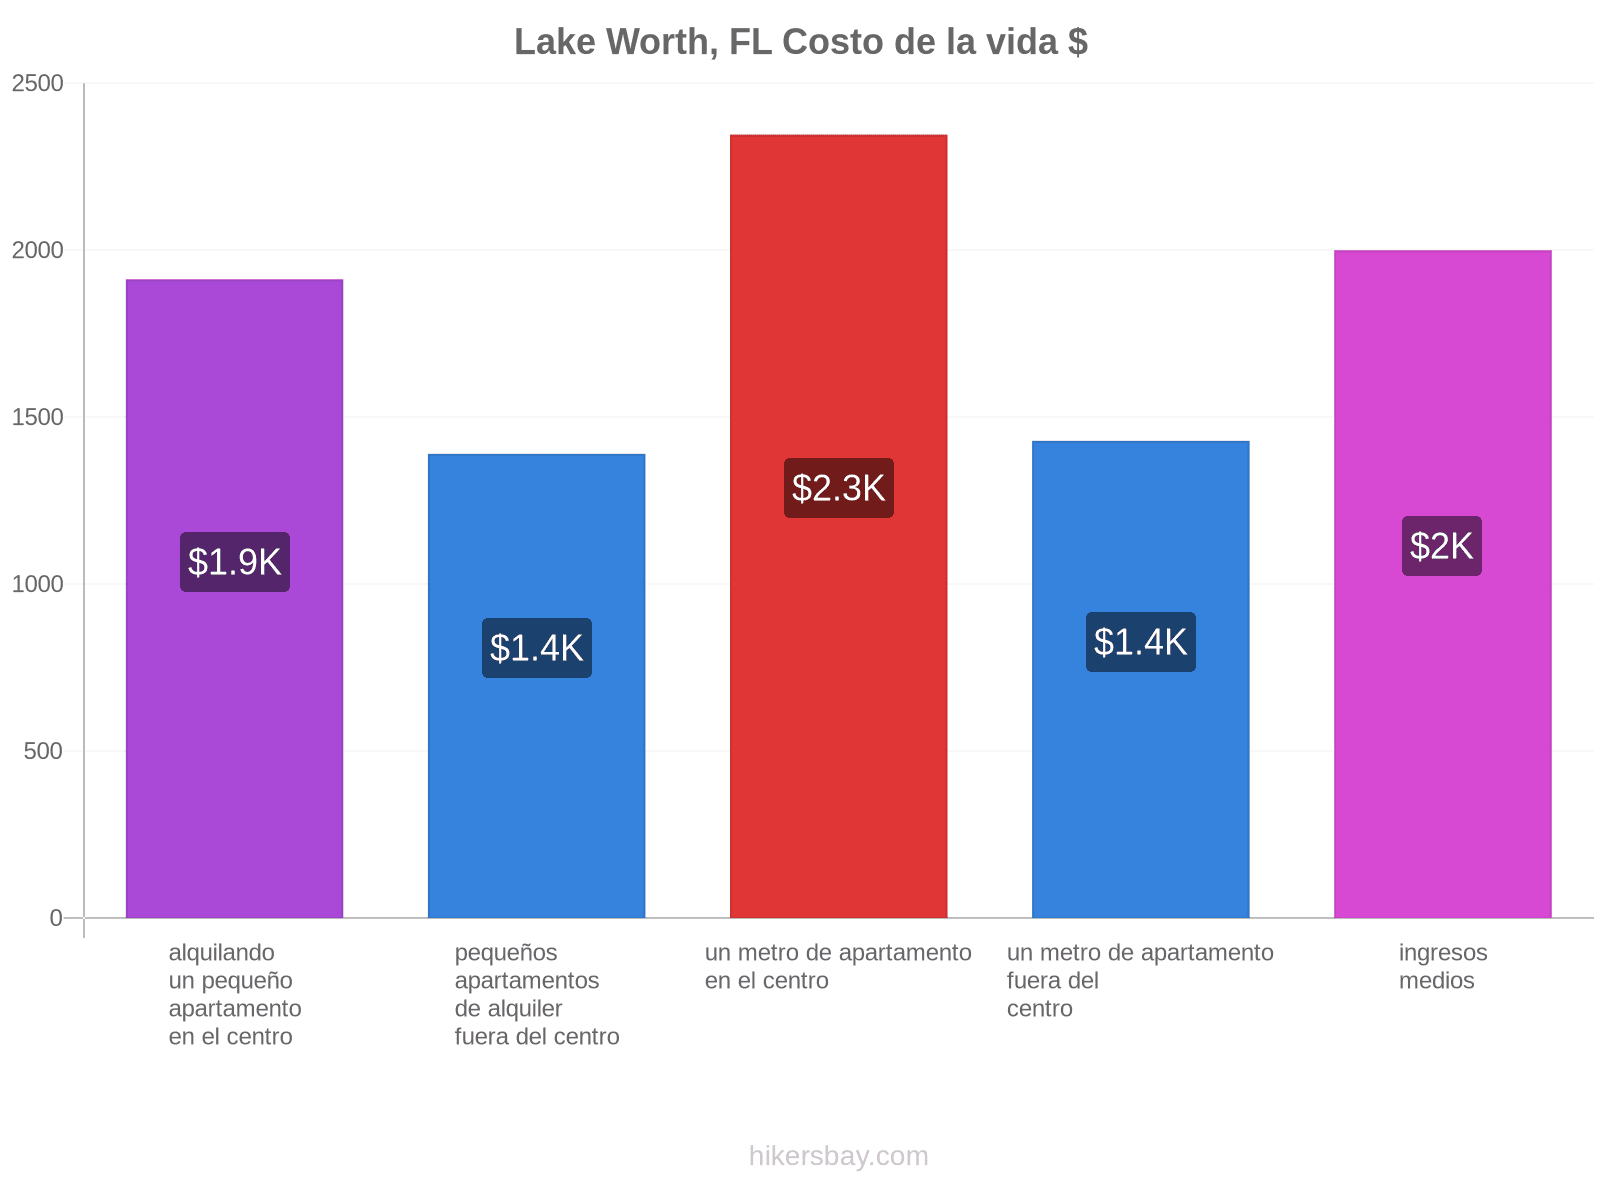 Lake Worth, FL costo de la vida hikersbay.com